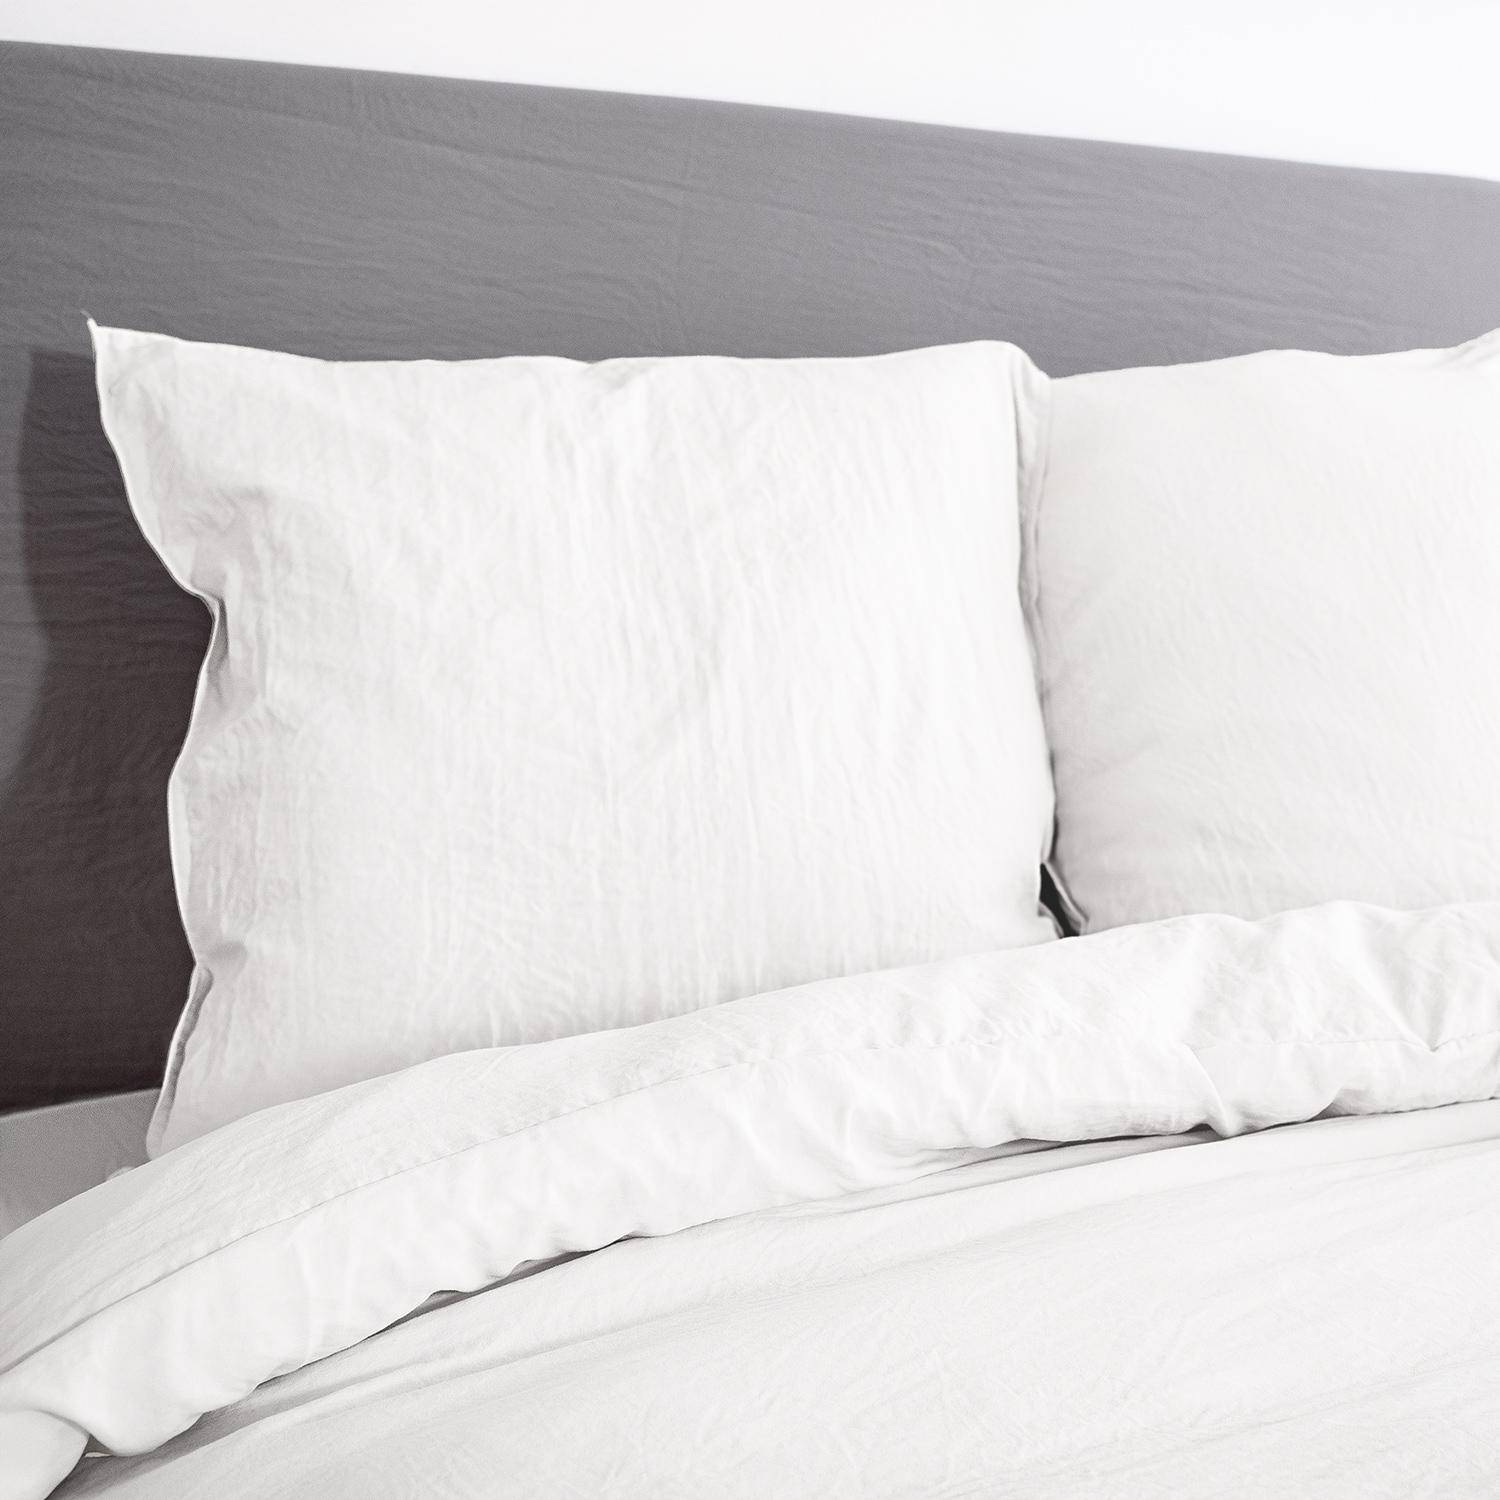 Bettwäsche-Set aus vorgewaschener Mikrofaser in weiß 240 x 220 cm für Doppelbetten, 1 Bettbezug und 2 Kissenbezüge,sweeek,Photo2